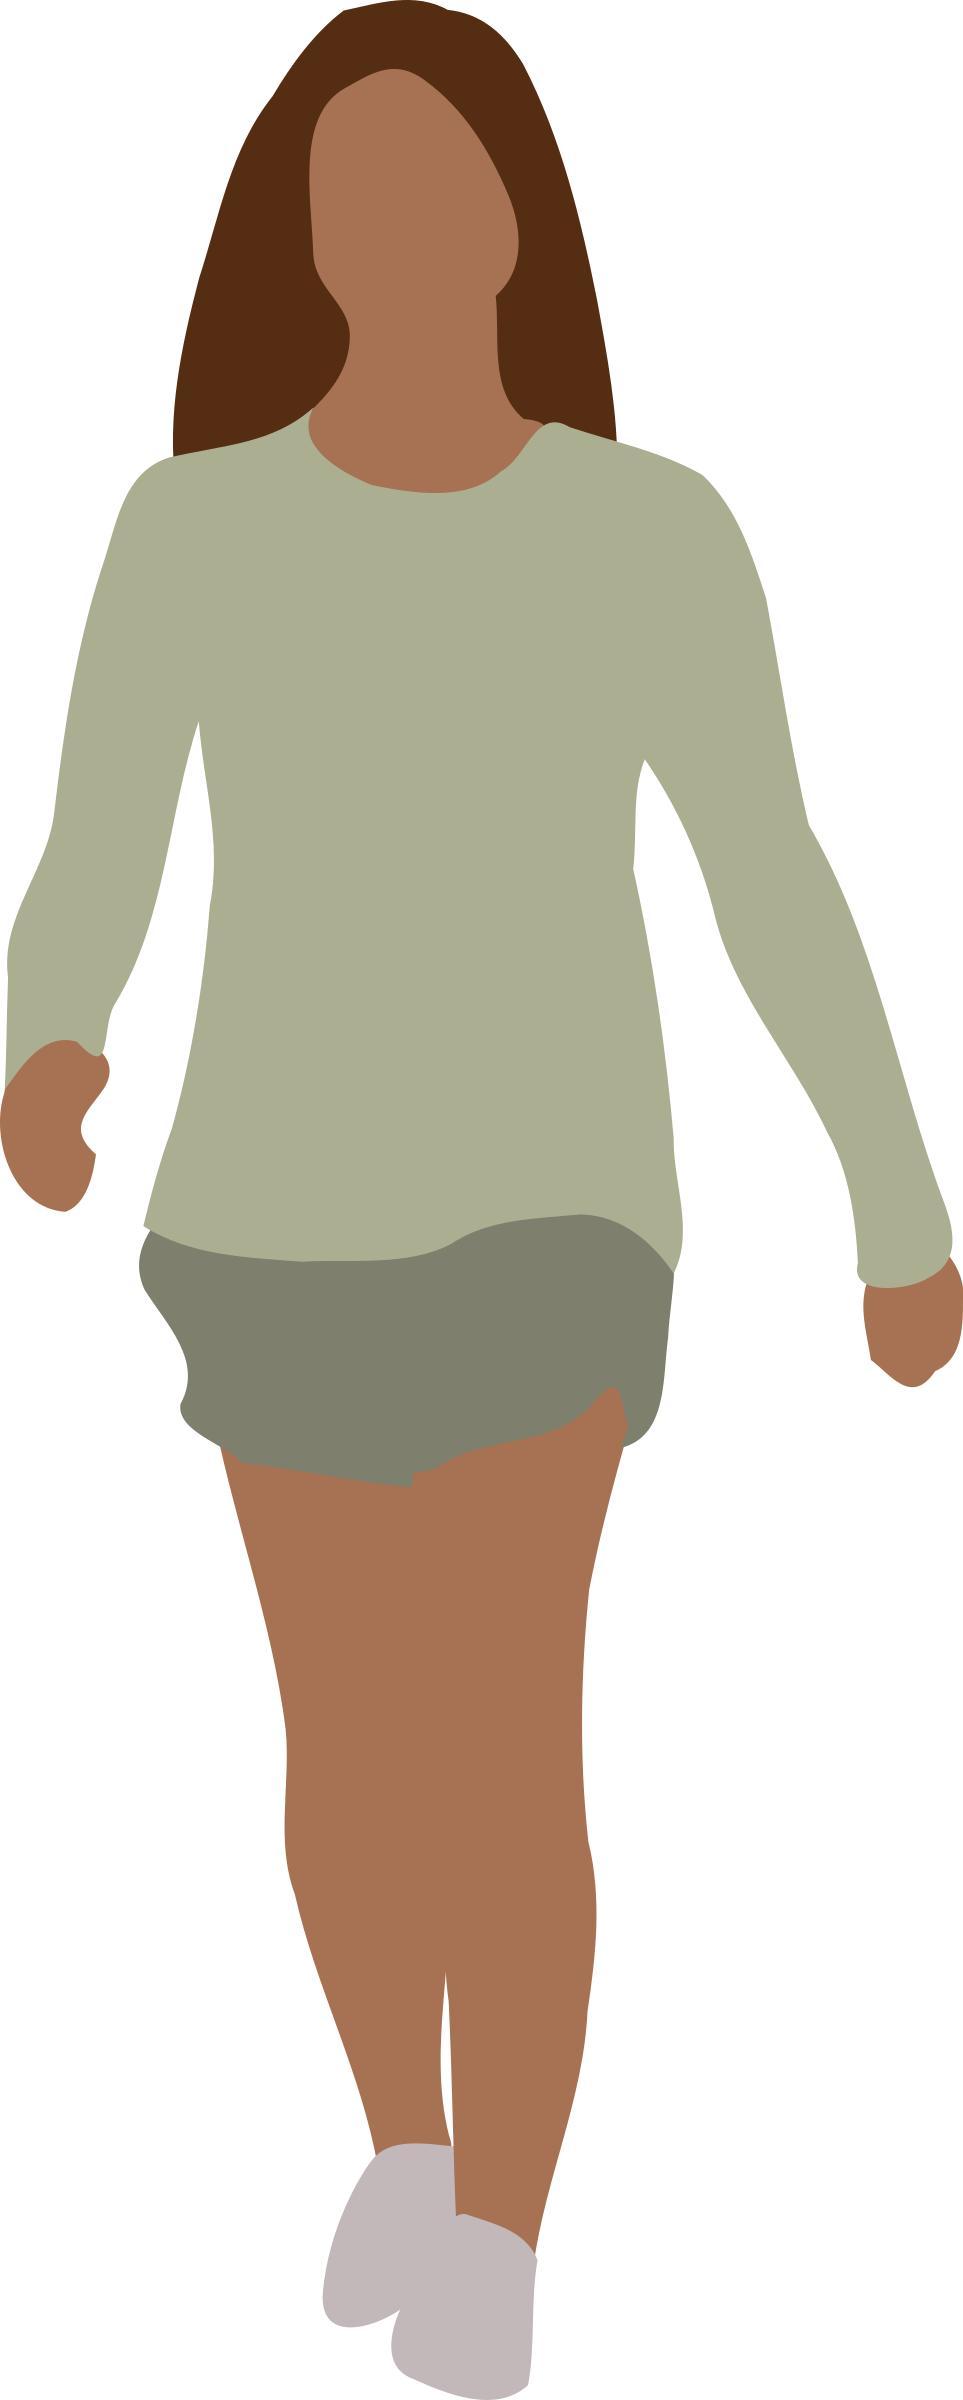 Faceless woman walking png transparent